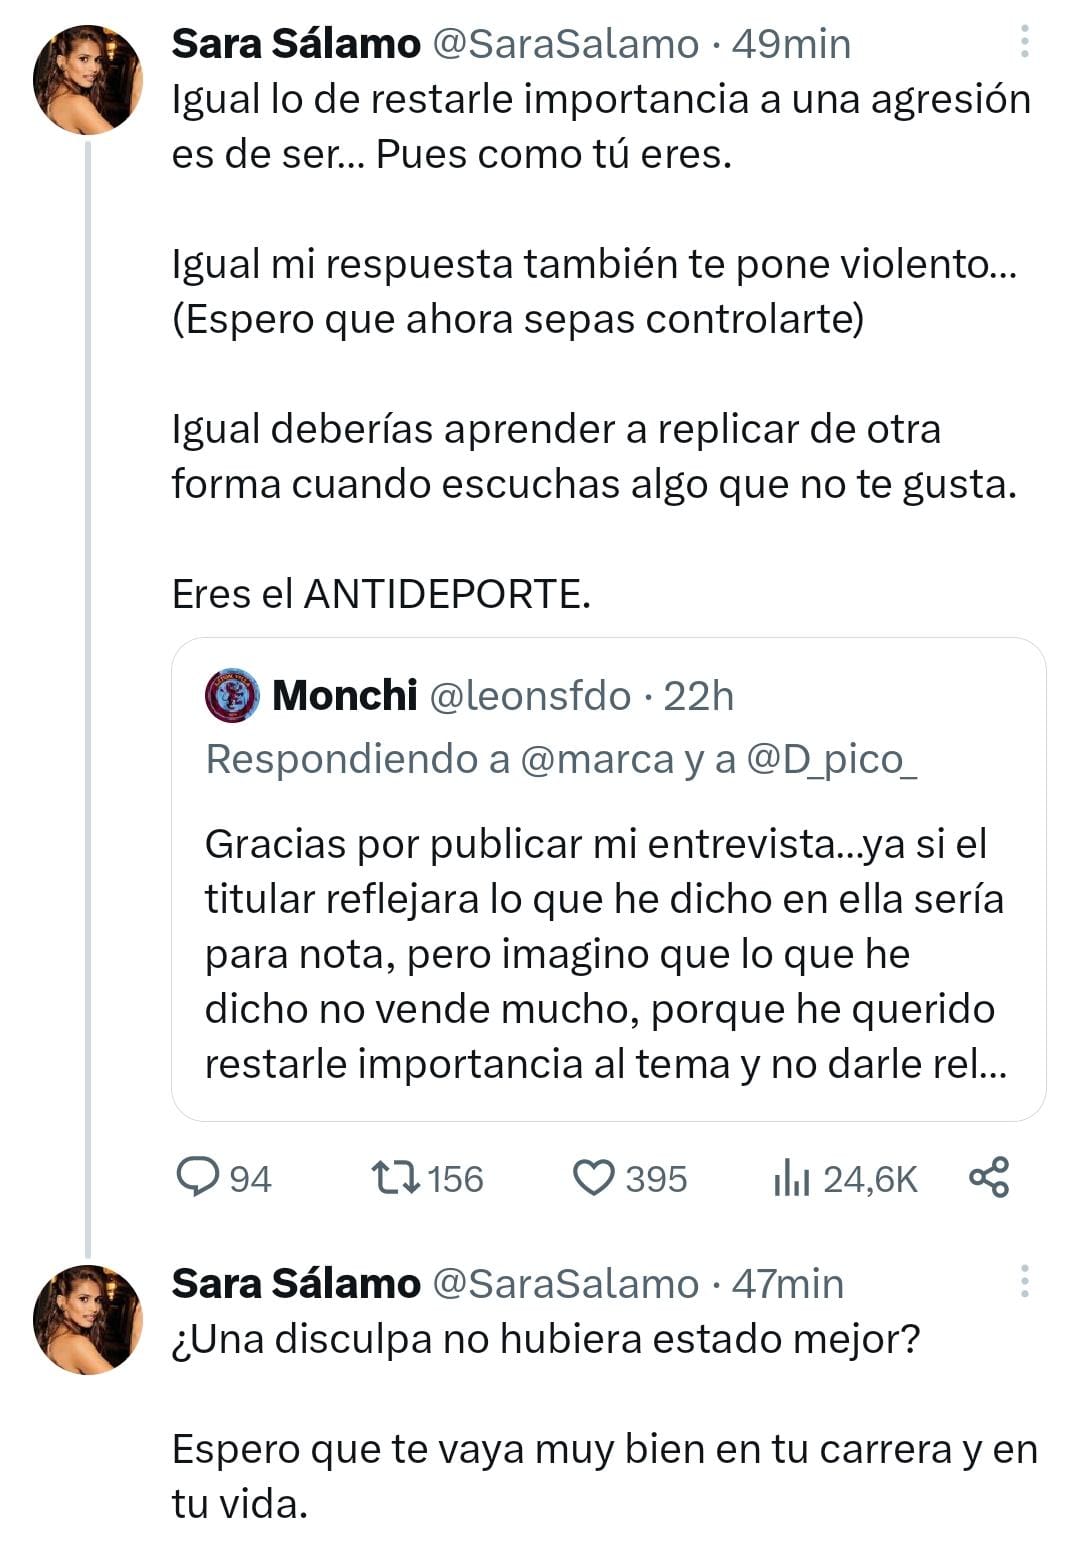 Sara Sálamo